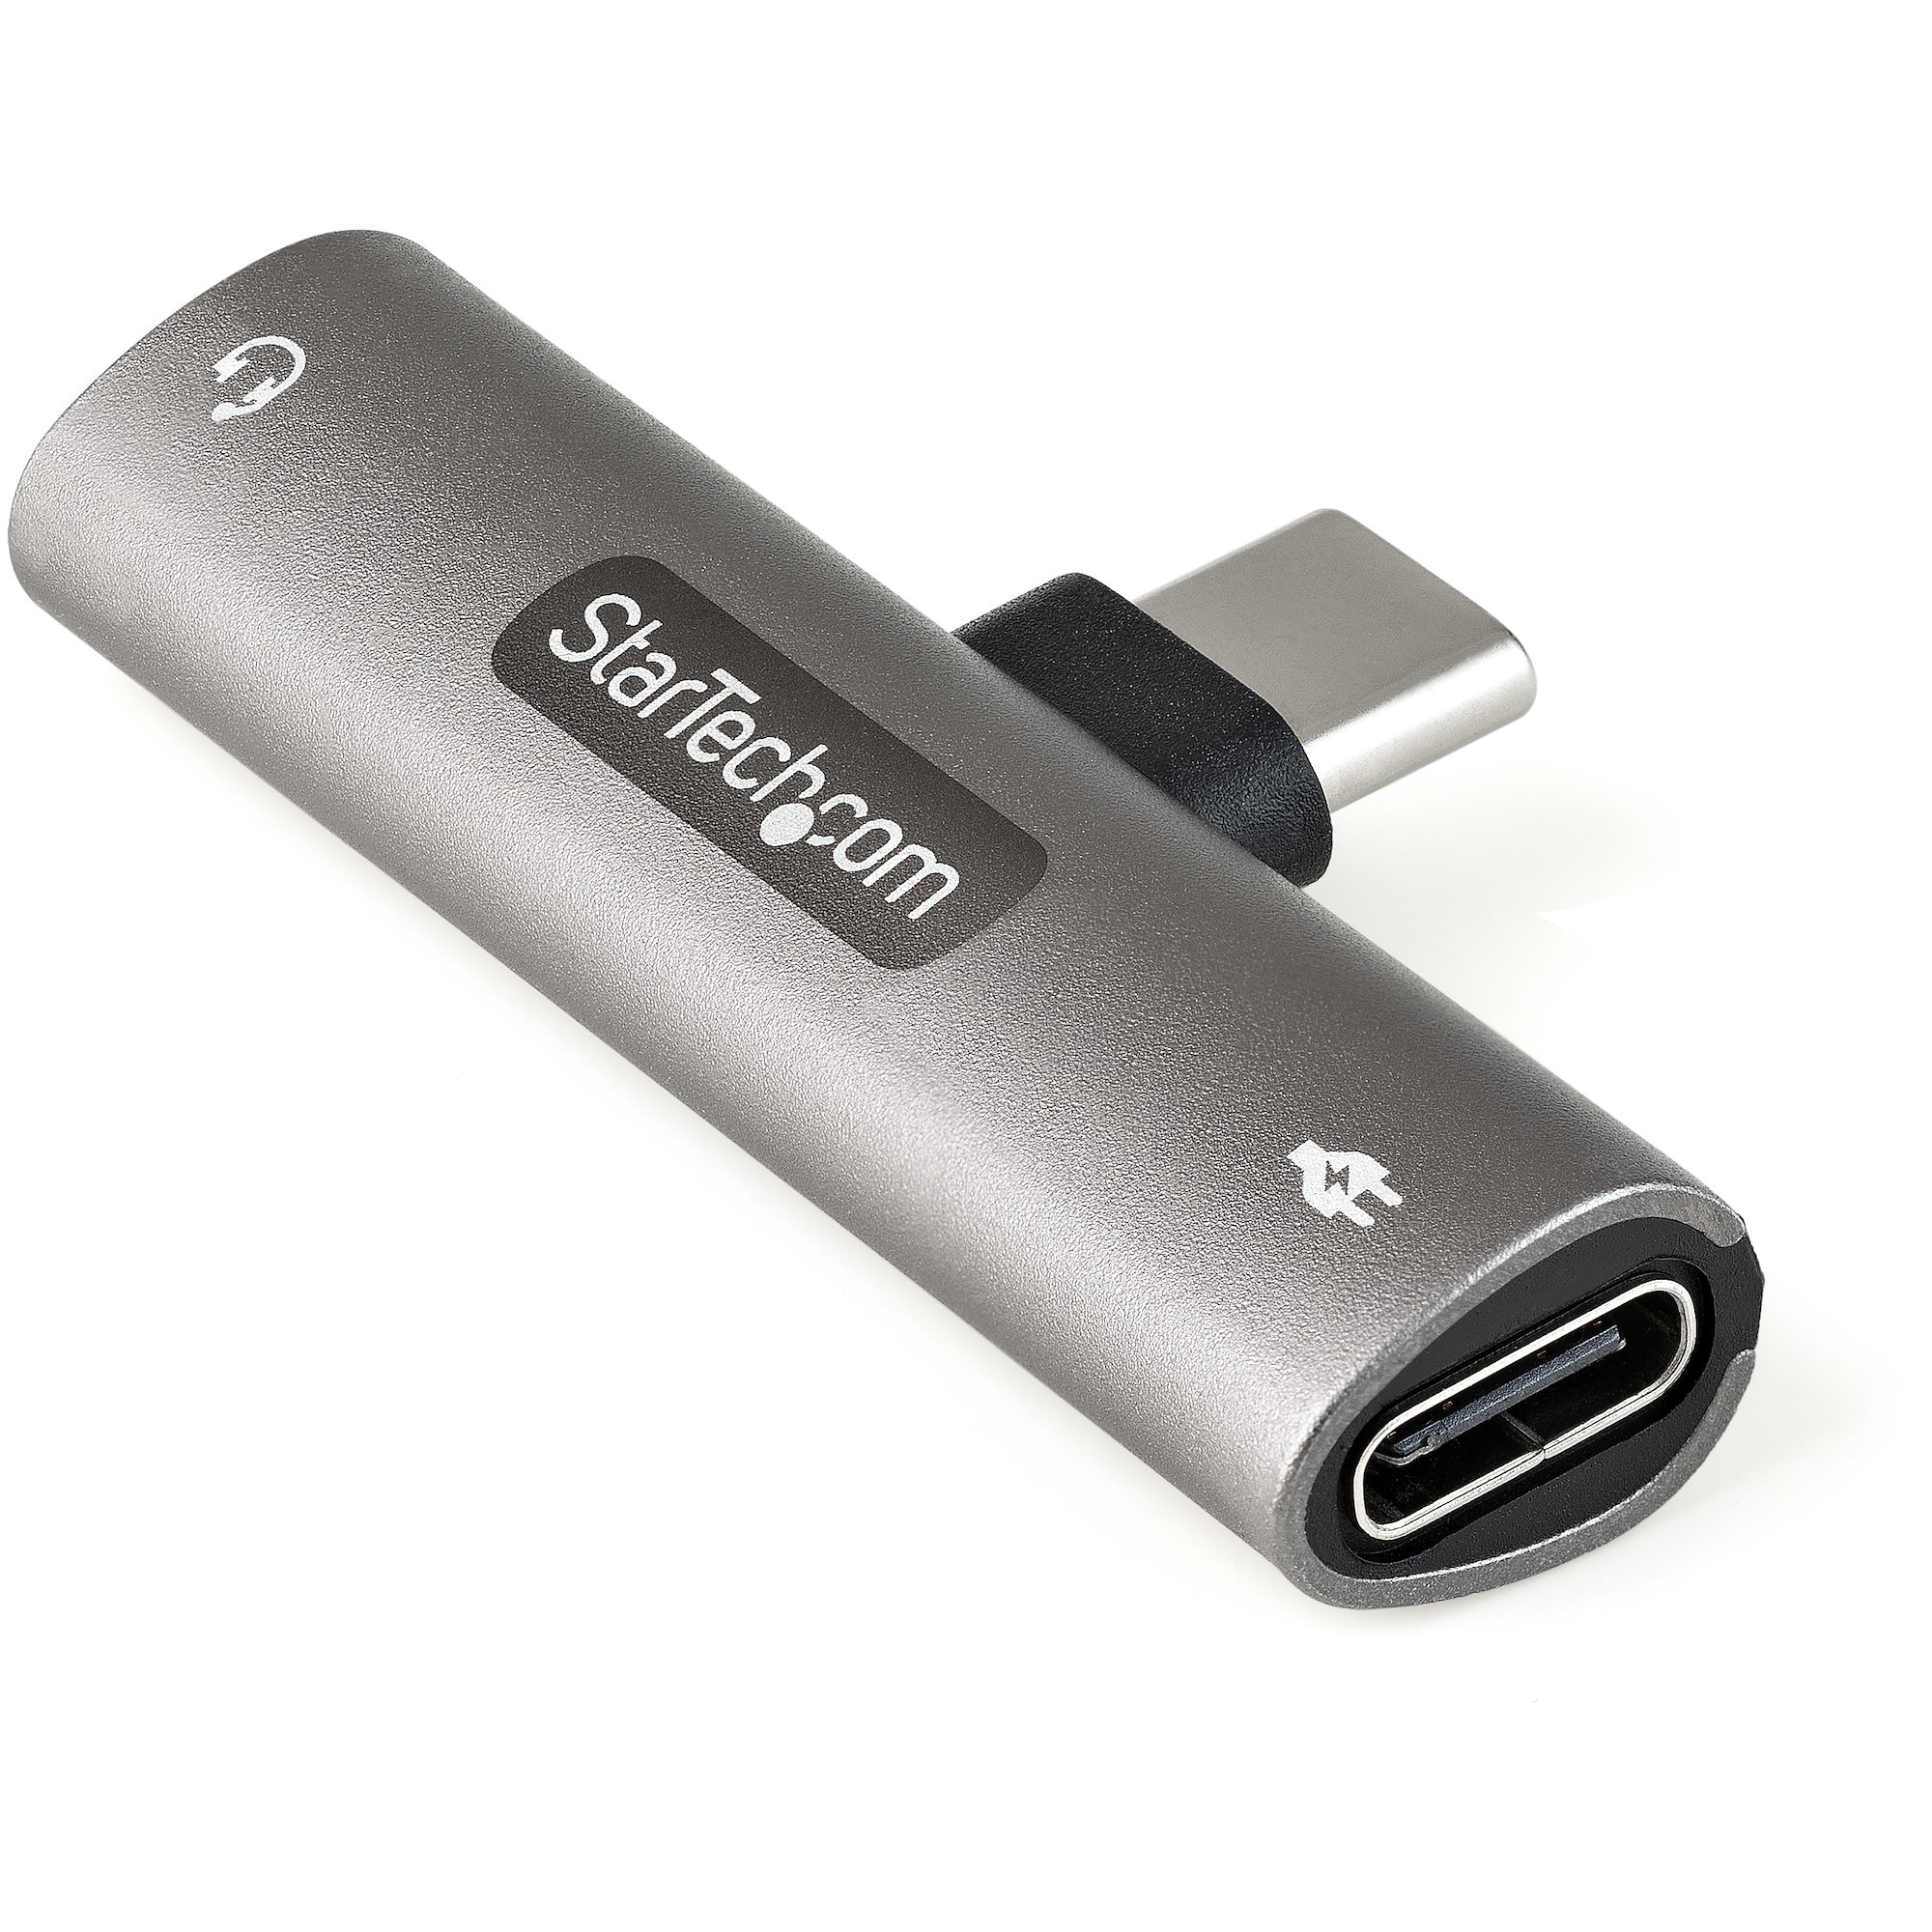 StarTech.com USB-C-ljud- och laddningsadapter - USB-C ljudadapter med TRRS-hörlurs-/headsetuttag på 3,5 mm och 60 W USB Type-C Power Delivery Pass-through-laddare - För telefon/surfplatta/bärbar dator med USB-C